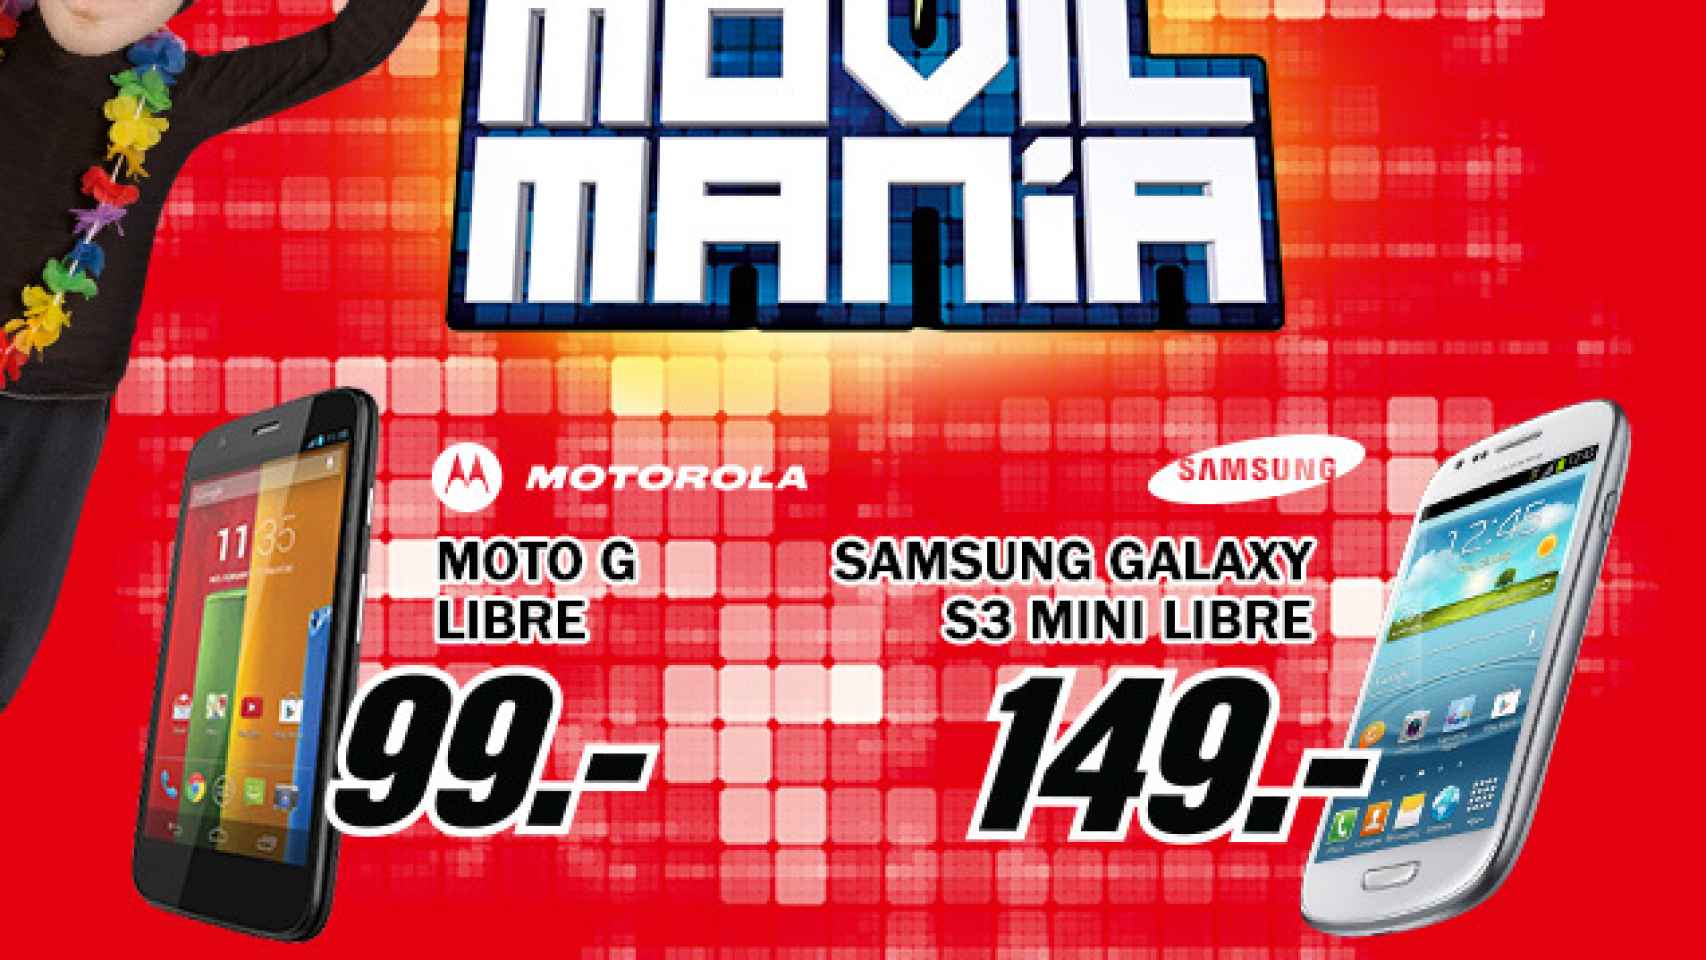 Erudito sensor Reducción Ofertón de Tuenti Móvil y MediaMarkt: Moto G a 99€ y Galaxy S3 Mini a 149€,  libres y sin permanencia